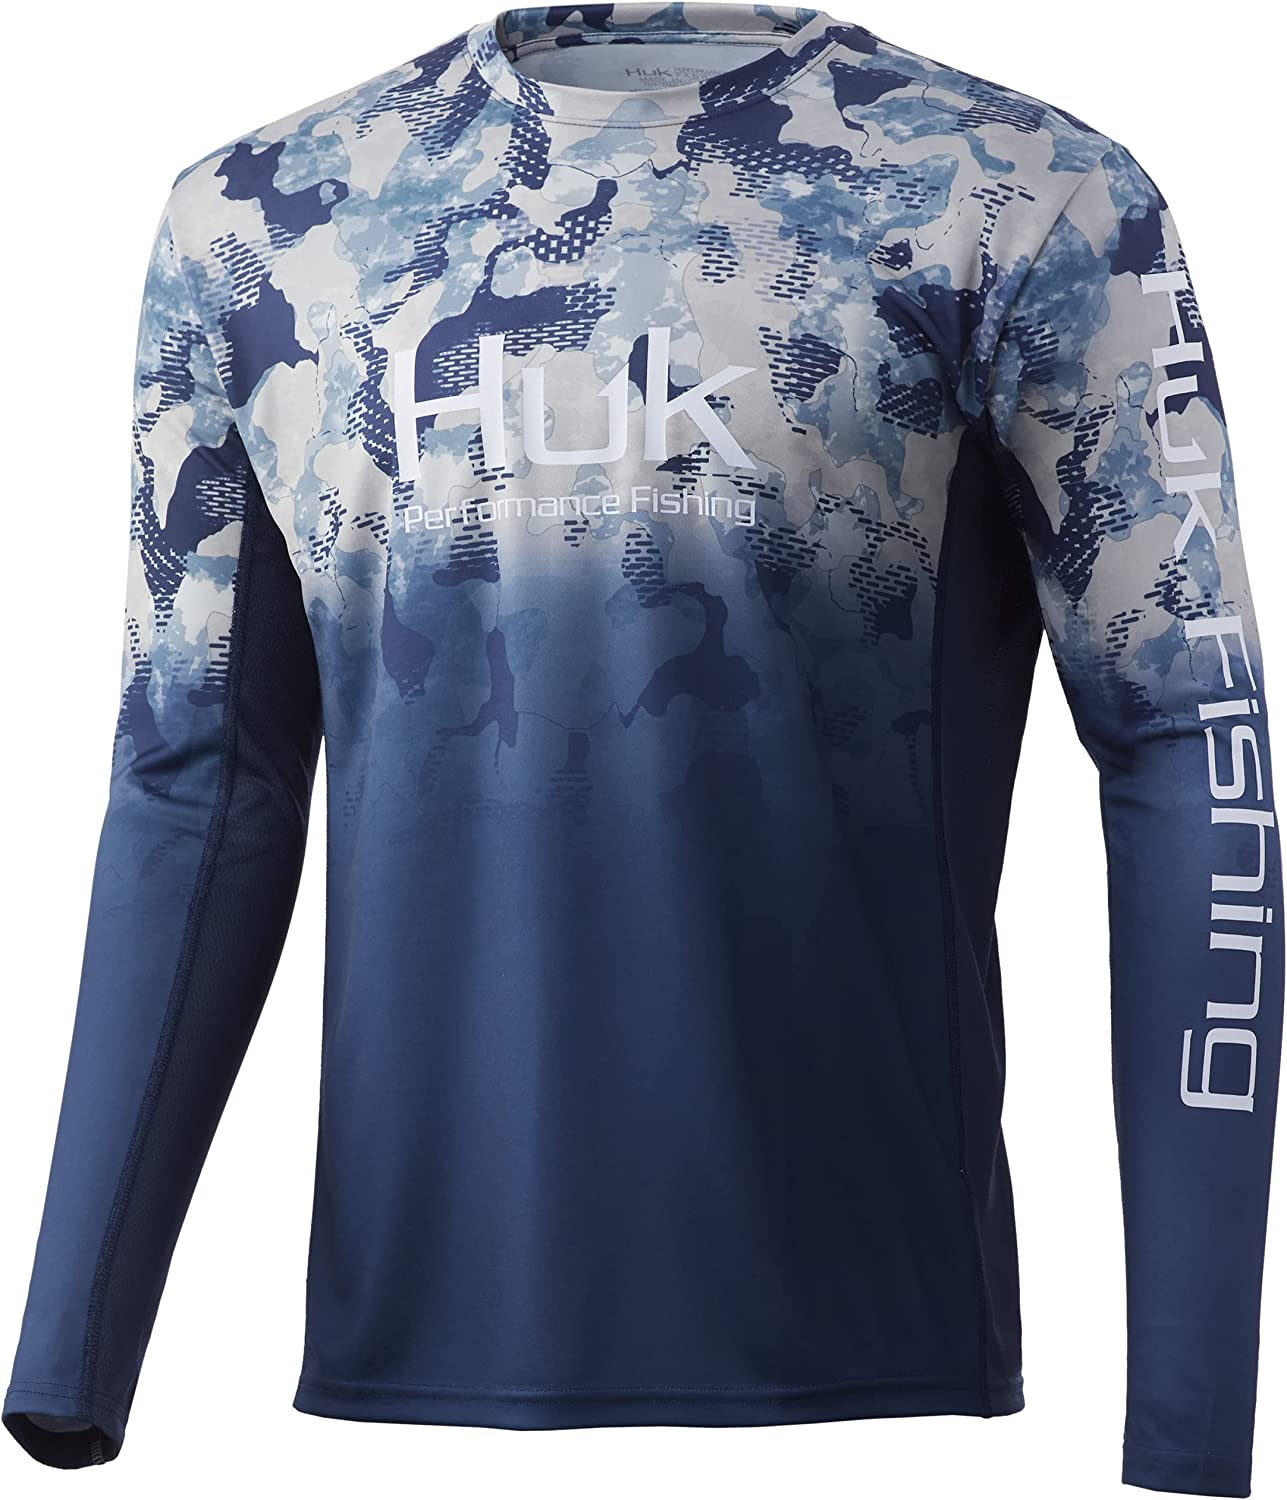 Huk Men's Icon x KC Refraction Camo Fade Long Sleeve Fishing Shirt, XL, Bluefin